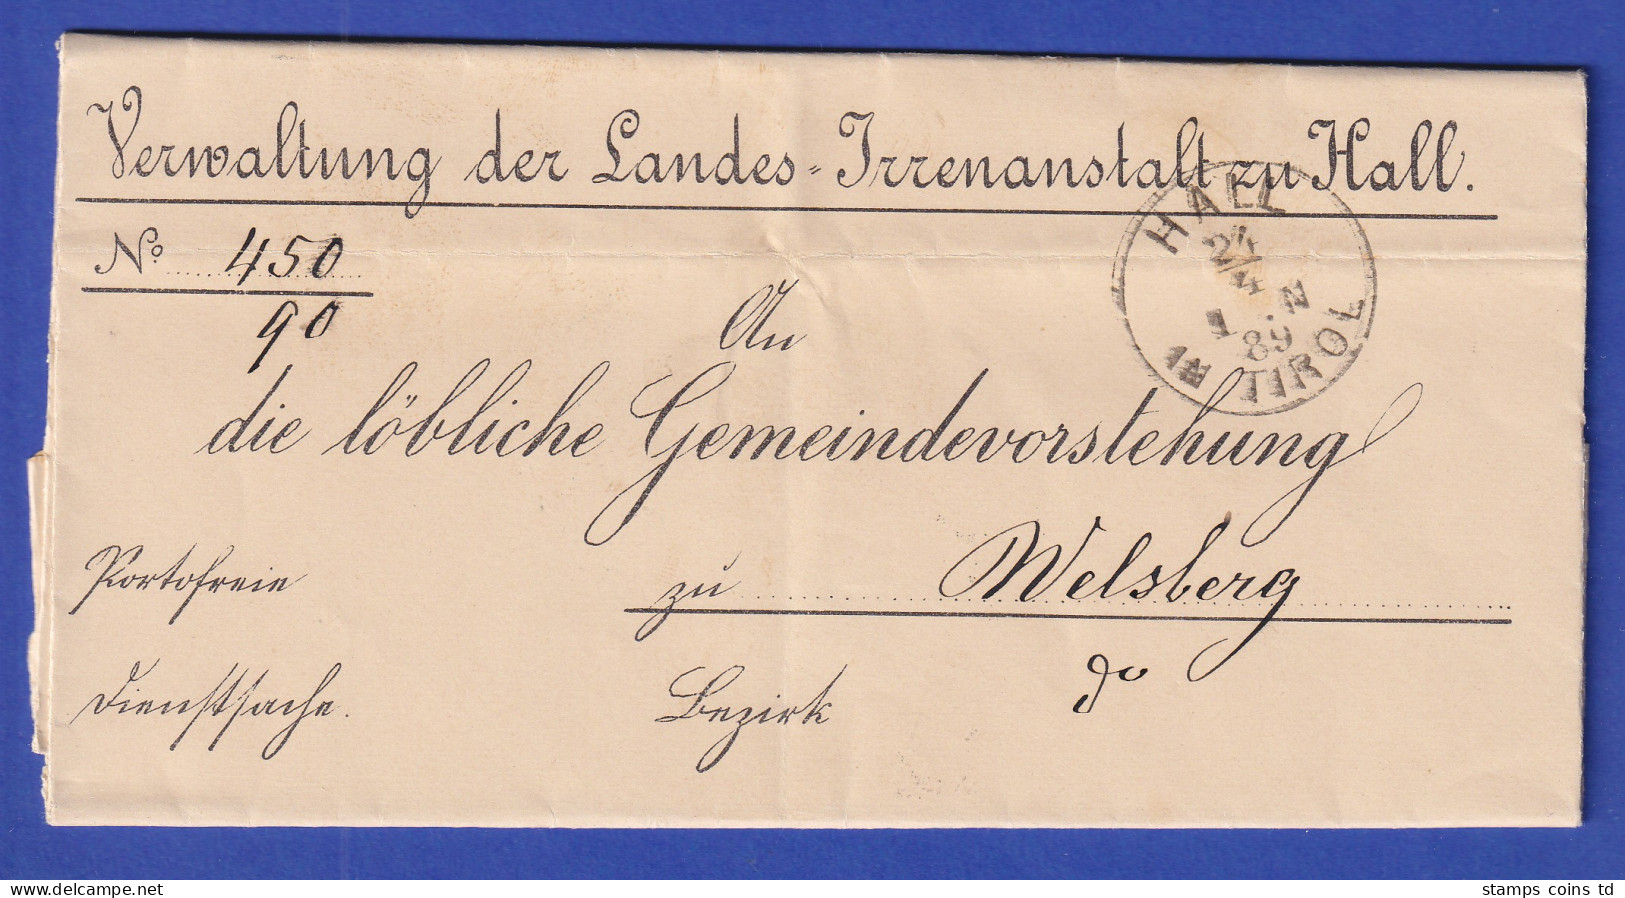 Österreich Dienstbrief Mit Rundstempel HALL IN TIROL 1889 - ...-1850 Vorphilatelie